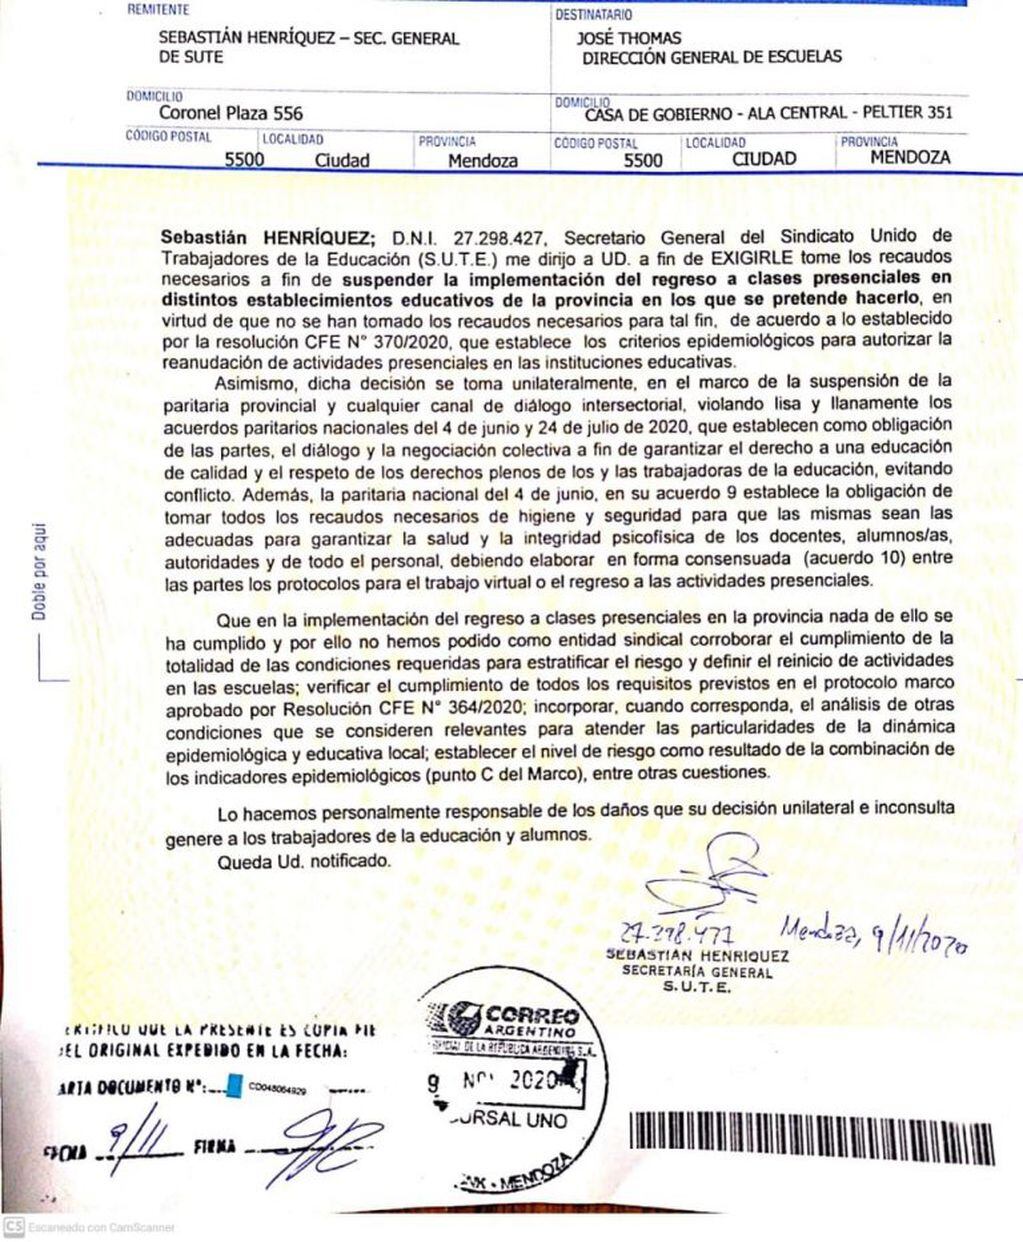 Carta documento del SUTE al Gobierno de Mendoza.